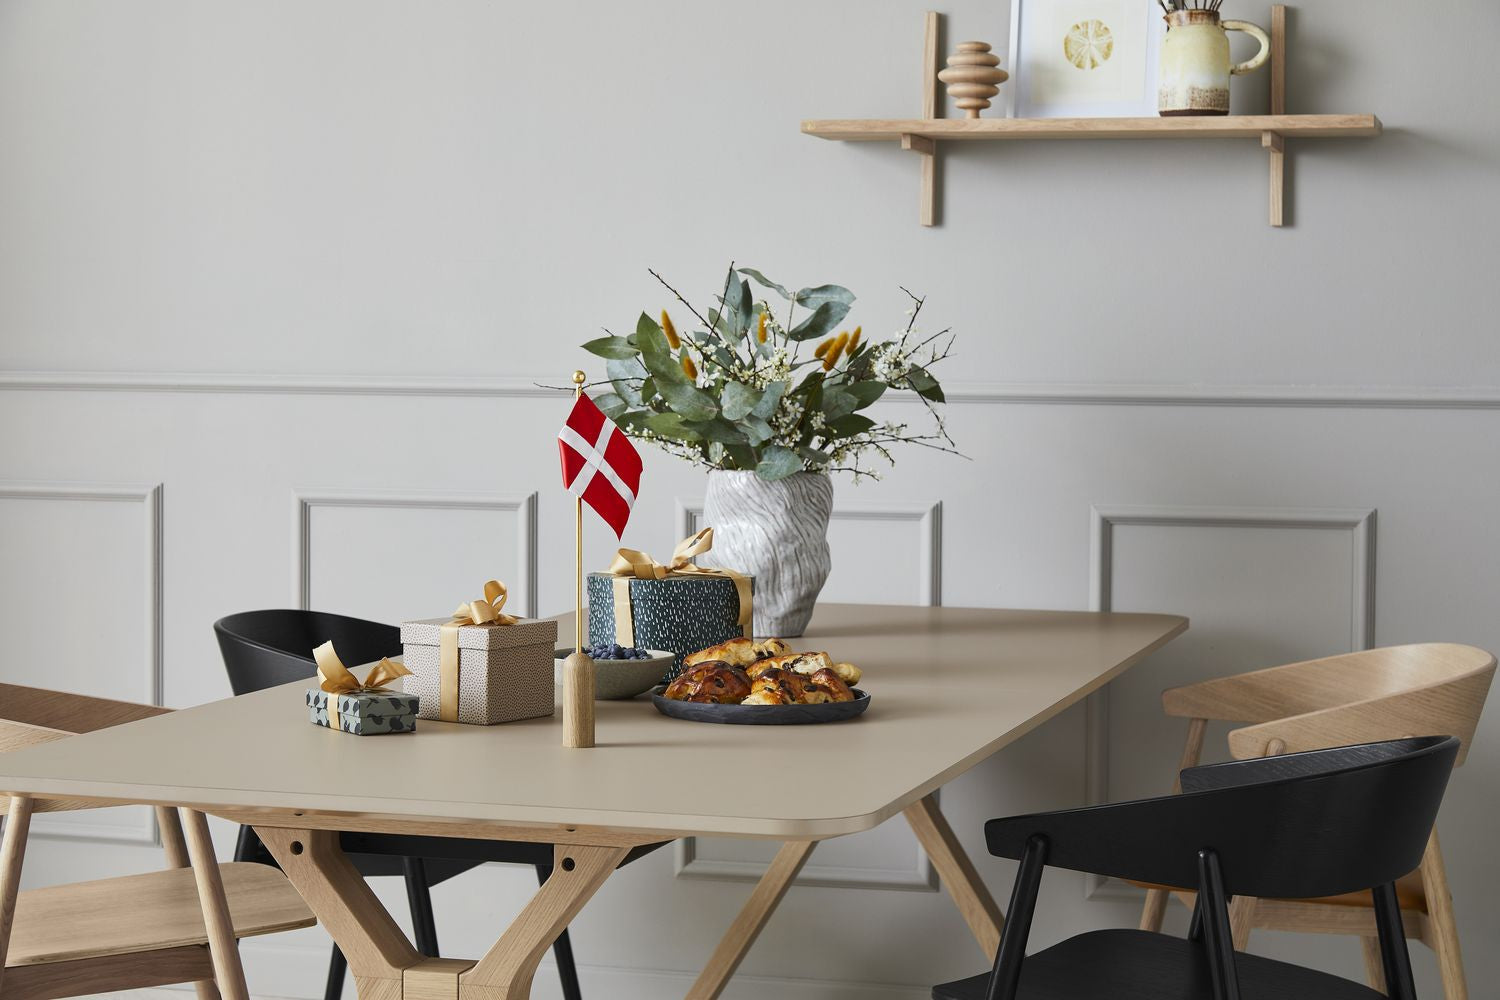 Muebles de Andersen celebra la bandera danesa H40 cm